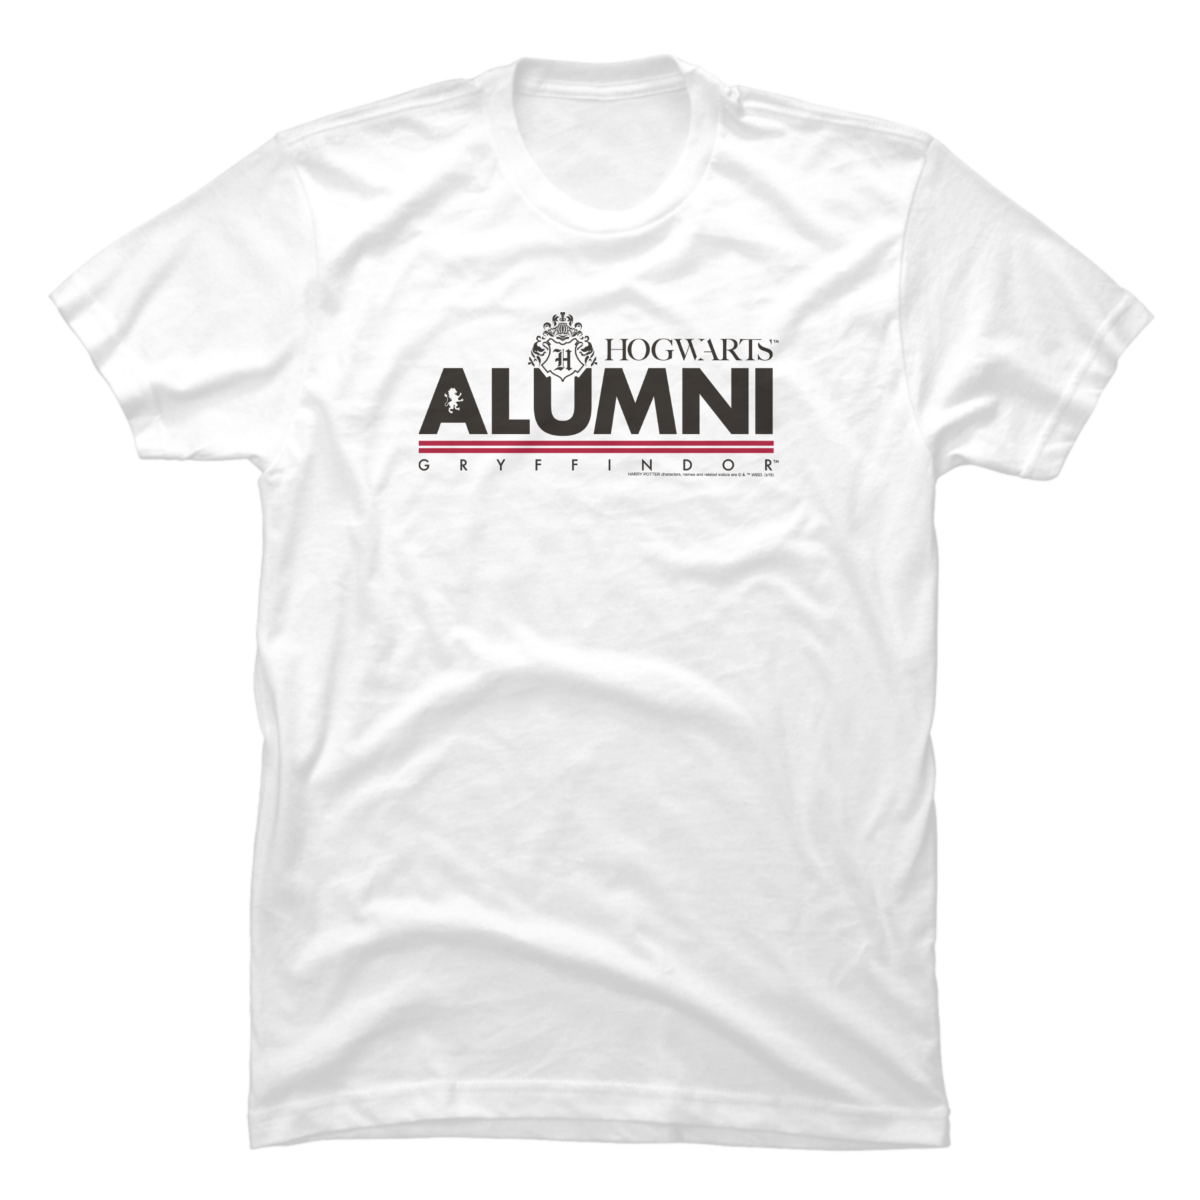 hogwarts alumni t shirt